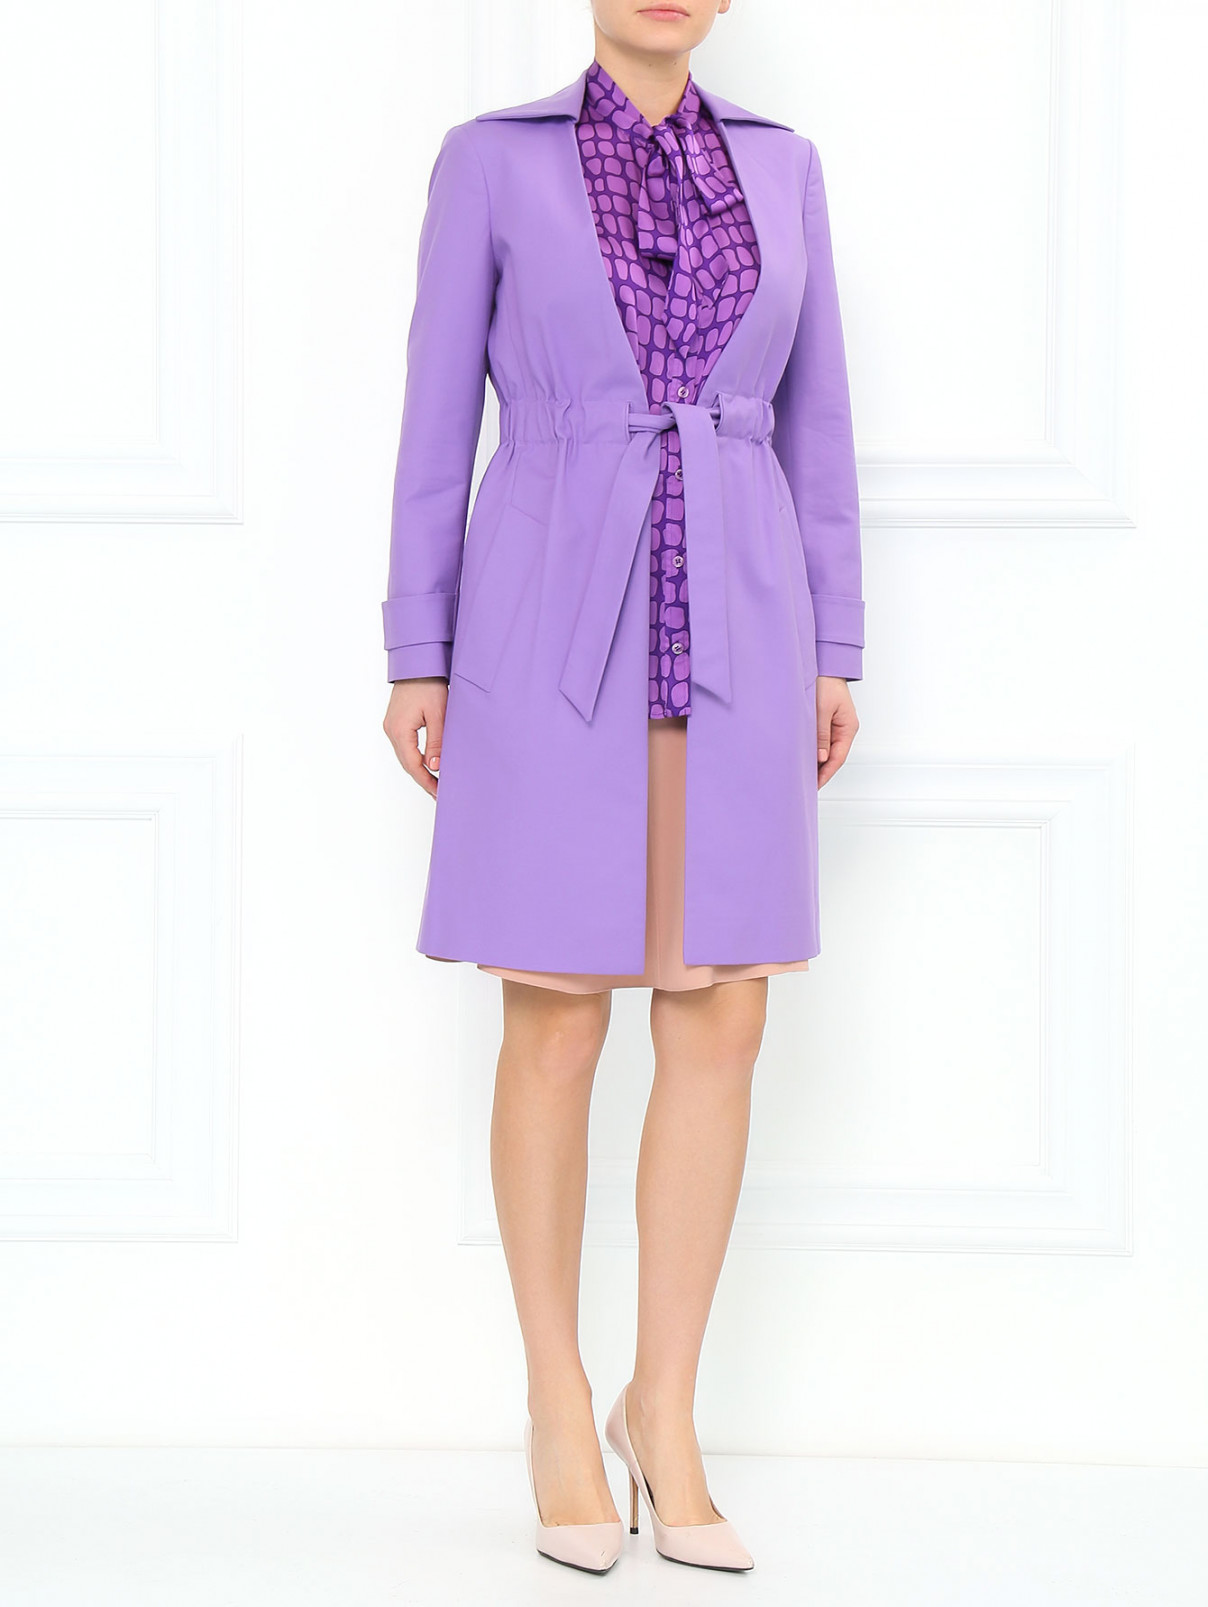 Блуза из шелка без рукавов с принтом Moschino Cheap&Chic  –  Модель Общий вид  – Цвет:  Фиолетовый